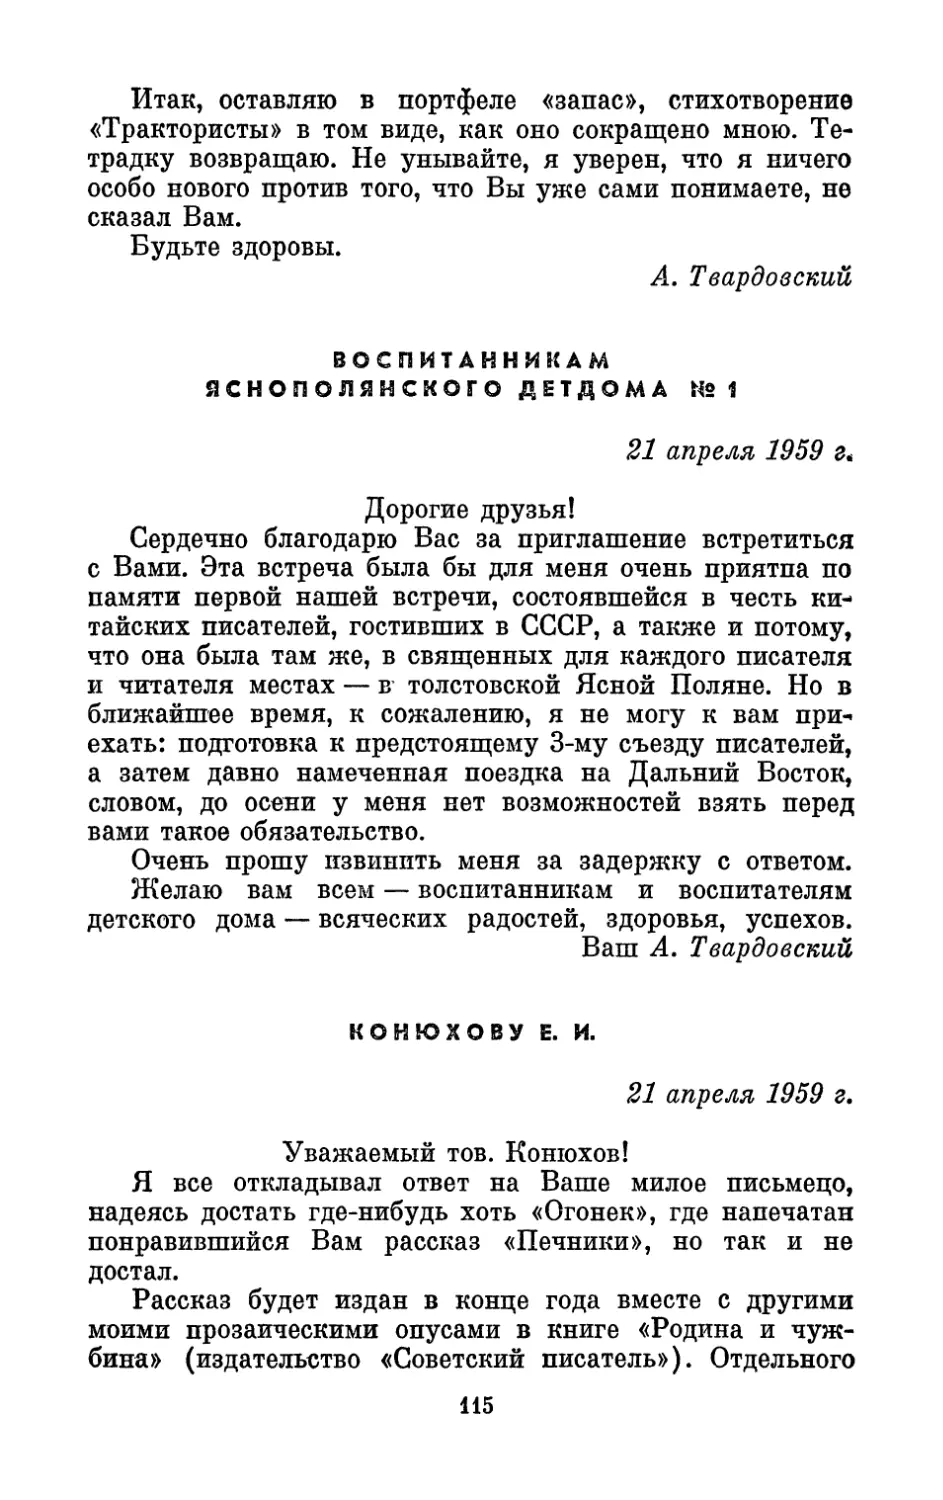 Воспитанникам Яснополянского детдома № 1, 21 апреля 1959 г.
Конюхову Е. И., 21 апреля 1959 г.